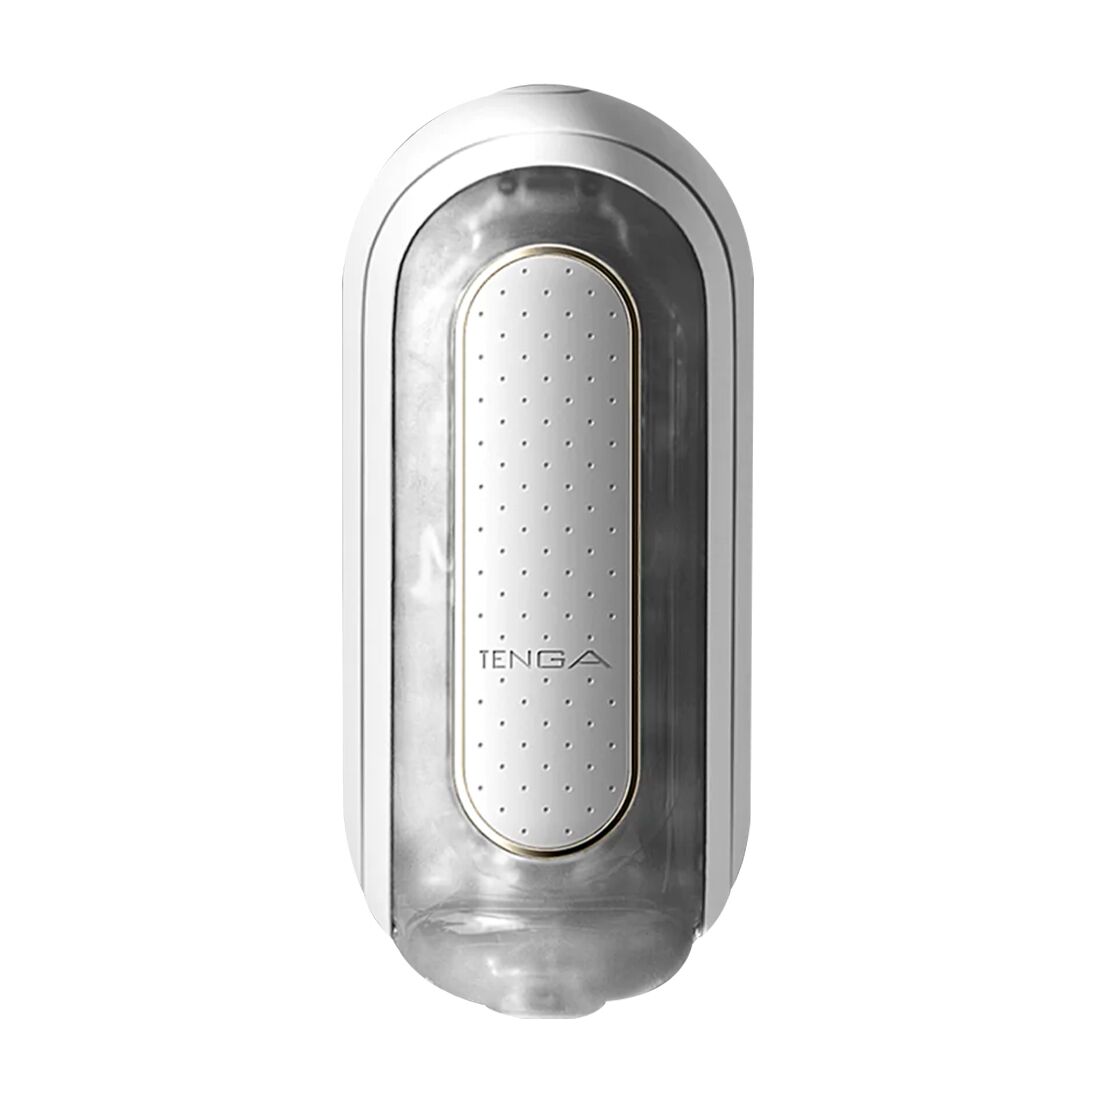 Вибромастурб�атор Tenga Flip Zero Electronic Vibration White, изменяемая интенсивность, раскладной